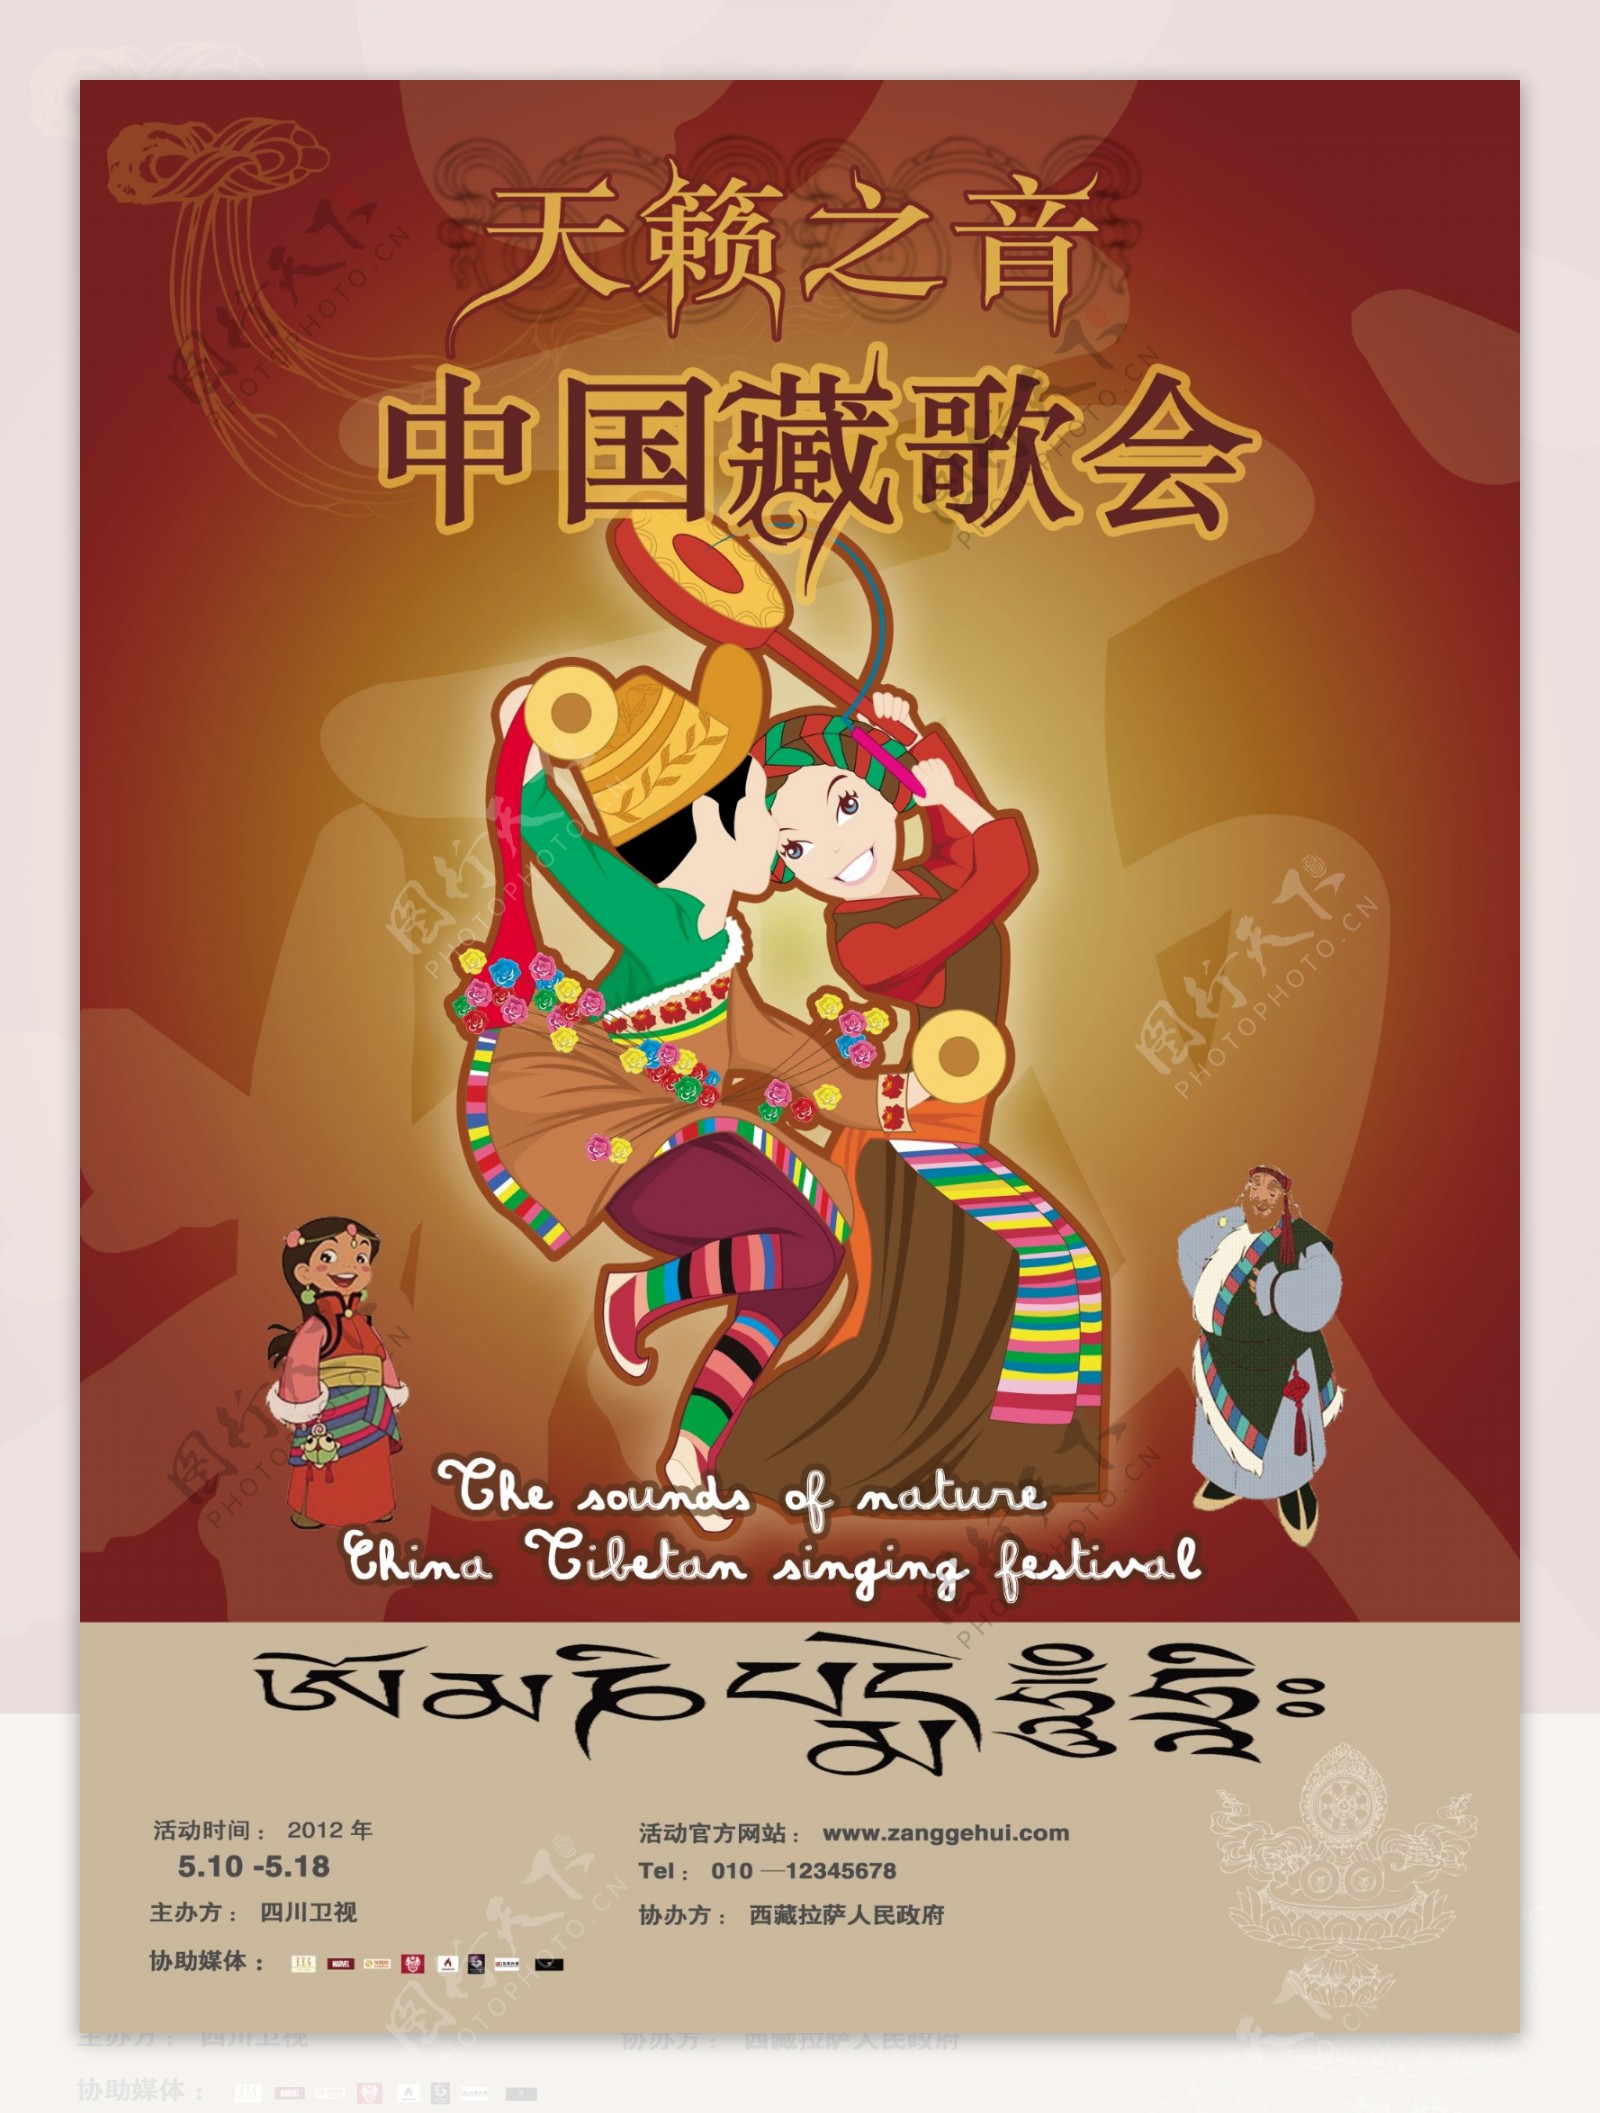 中国藏歌会海报PSD素材